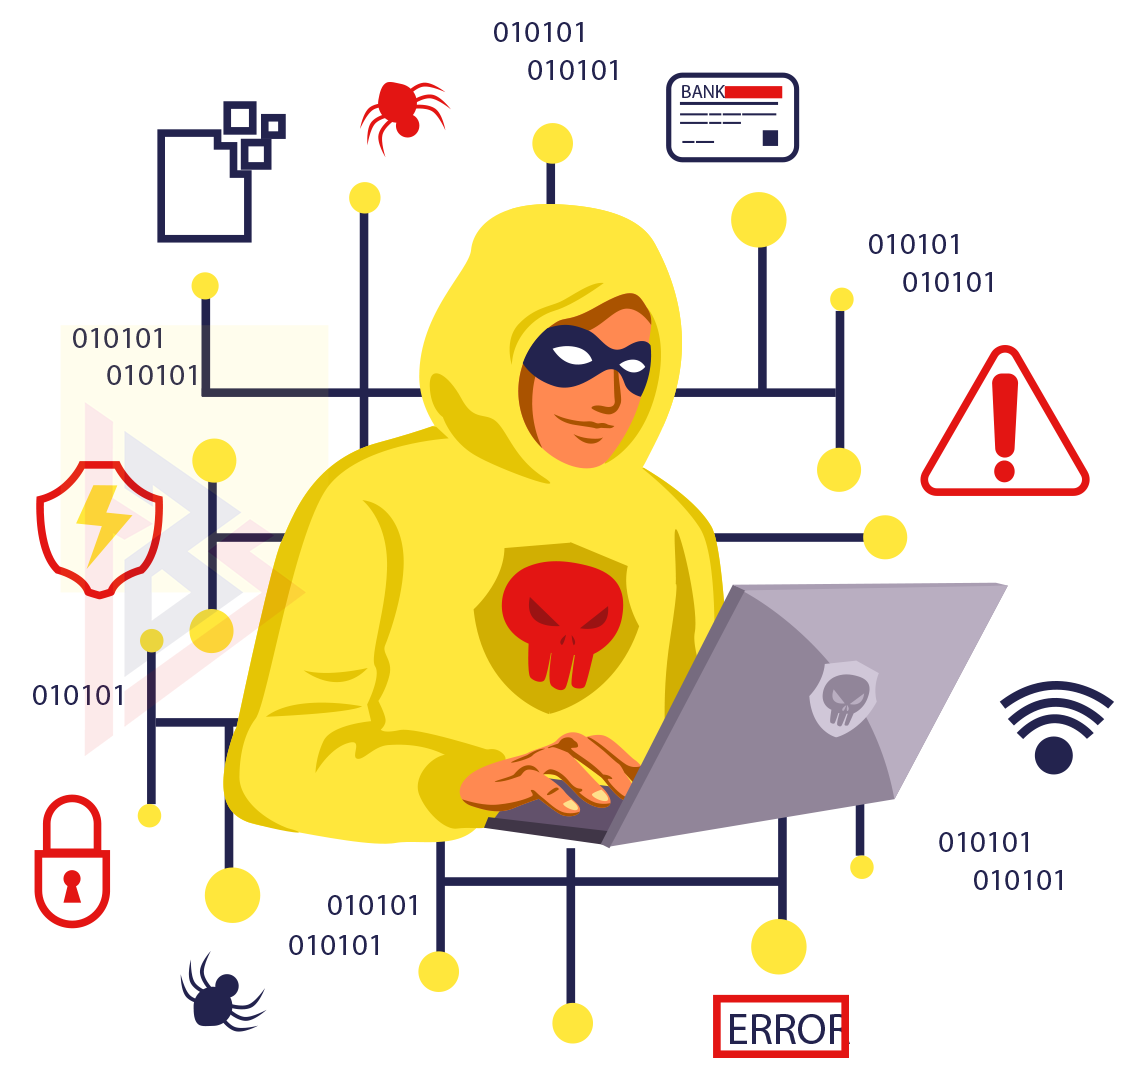 Cybercrime attacks